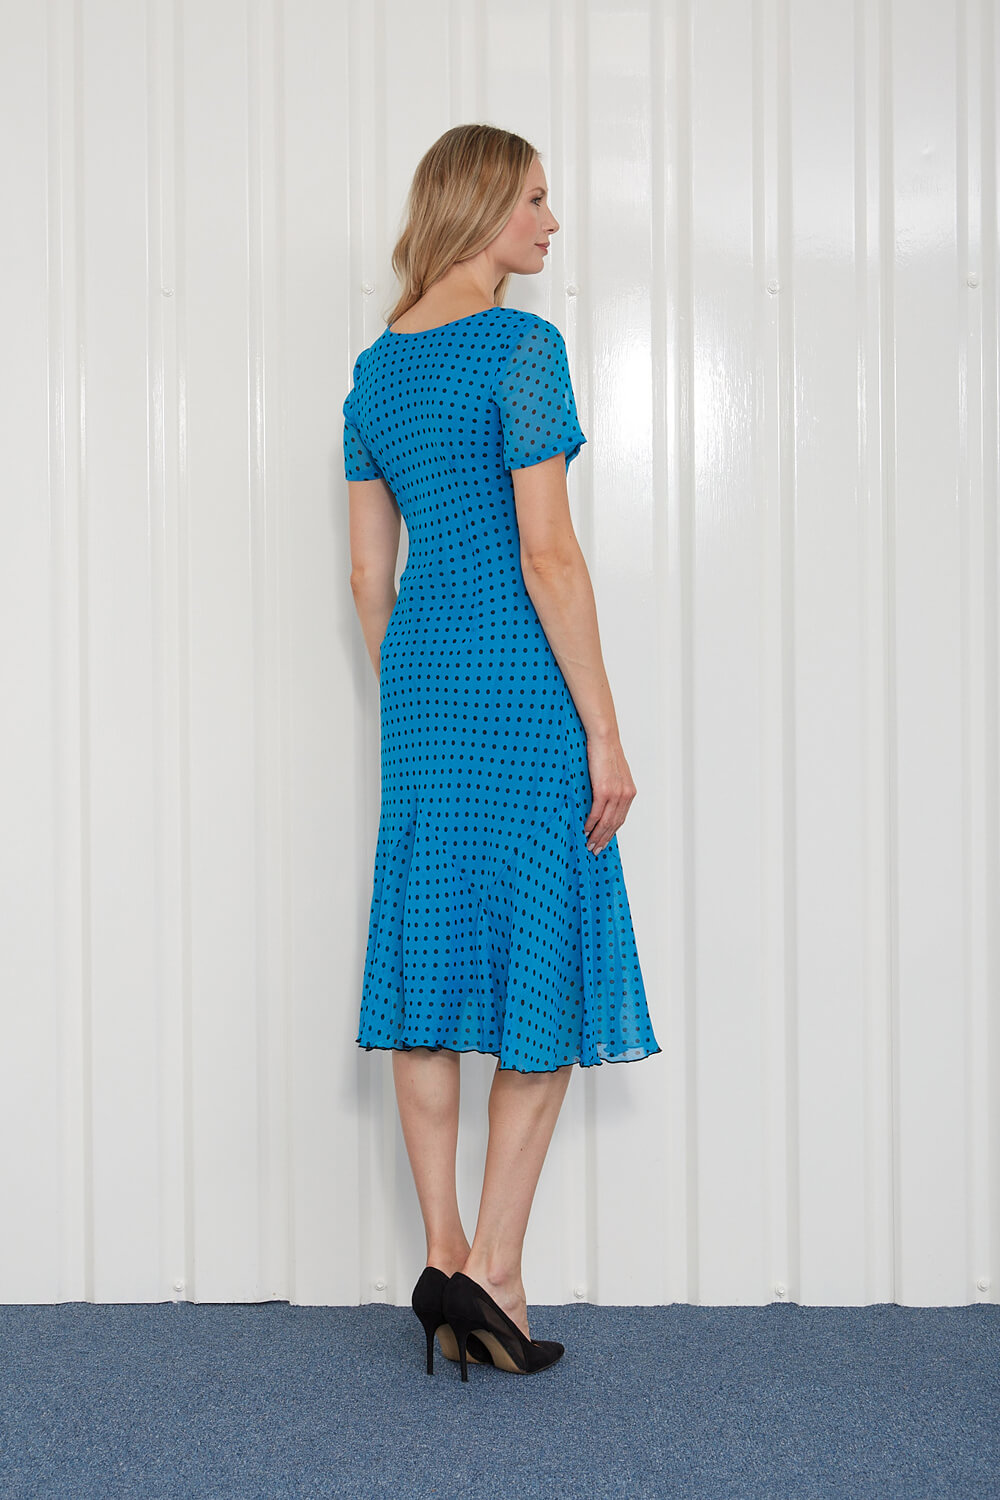 Turquoise Julianna Spot Print Chiffon Dress, Image 2 of 4